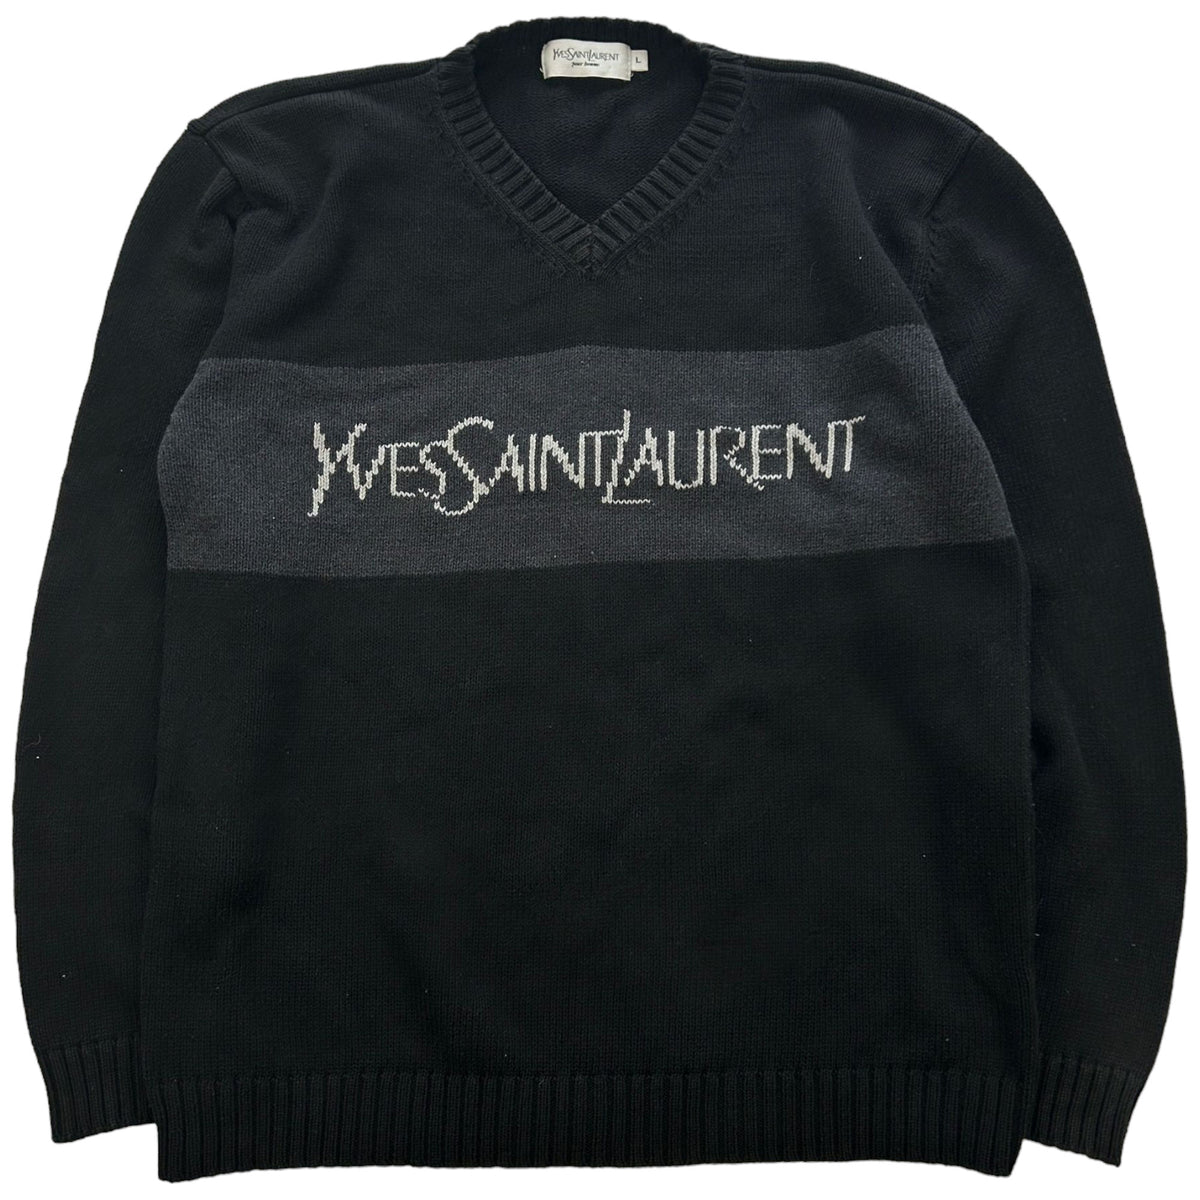 Vintage Yves Saint Laurent Spellout Knit Jumper Size M